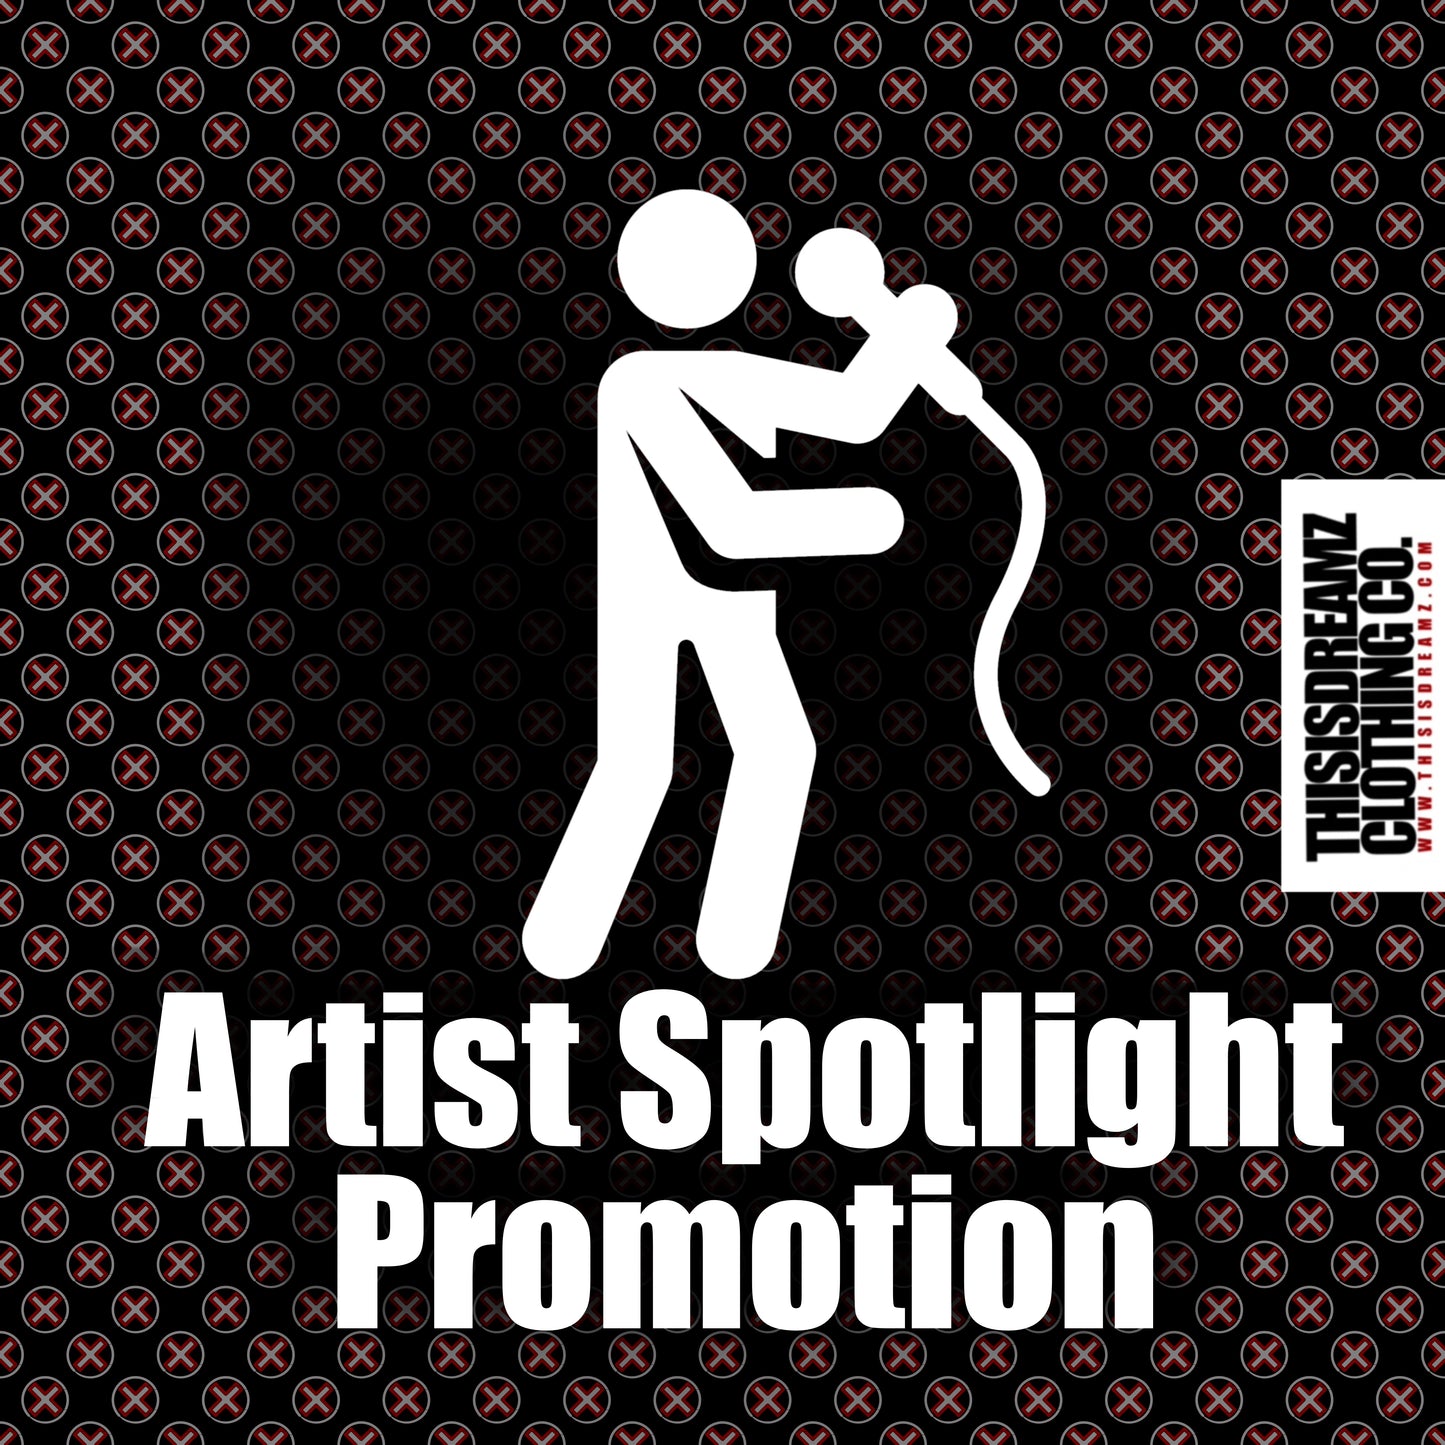 Artist Spotlight Promotion